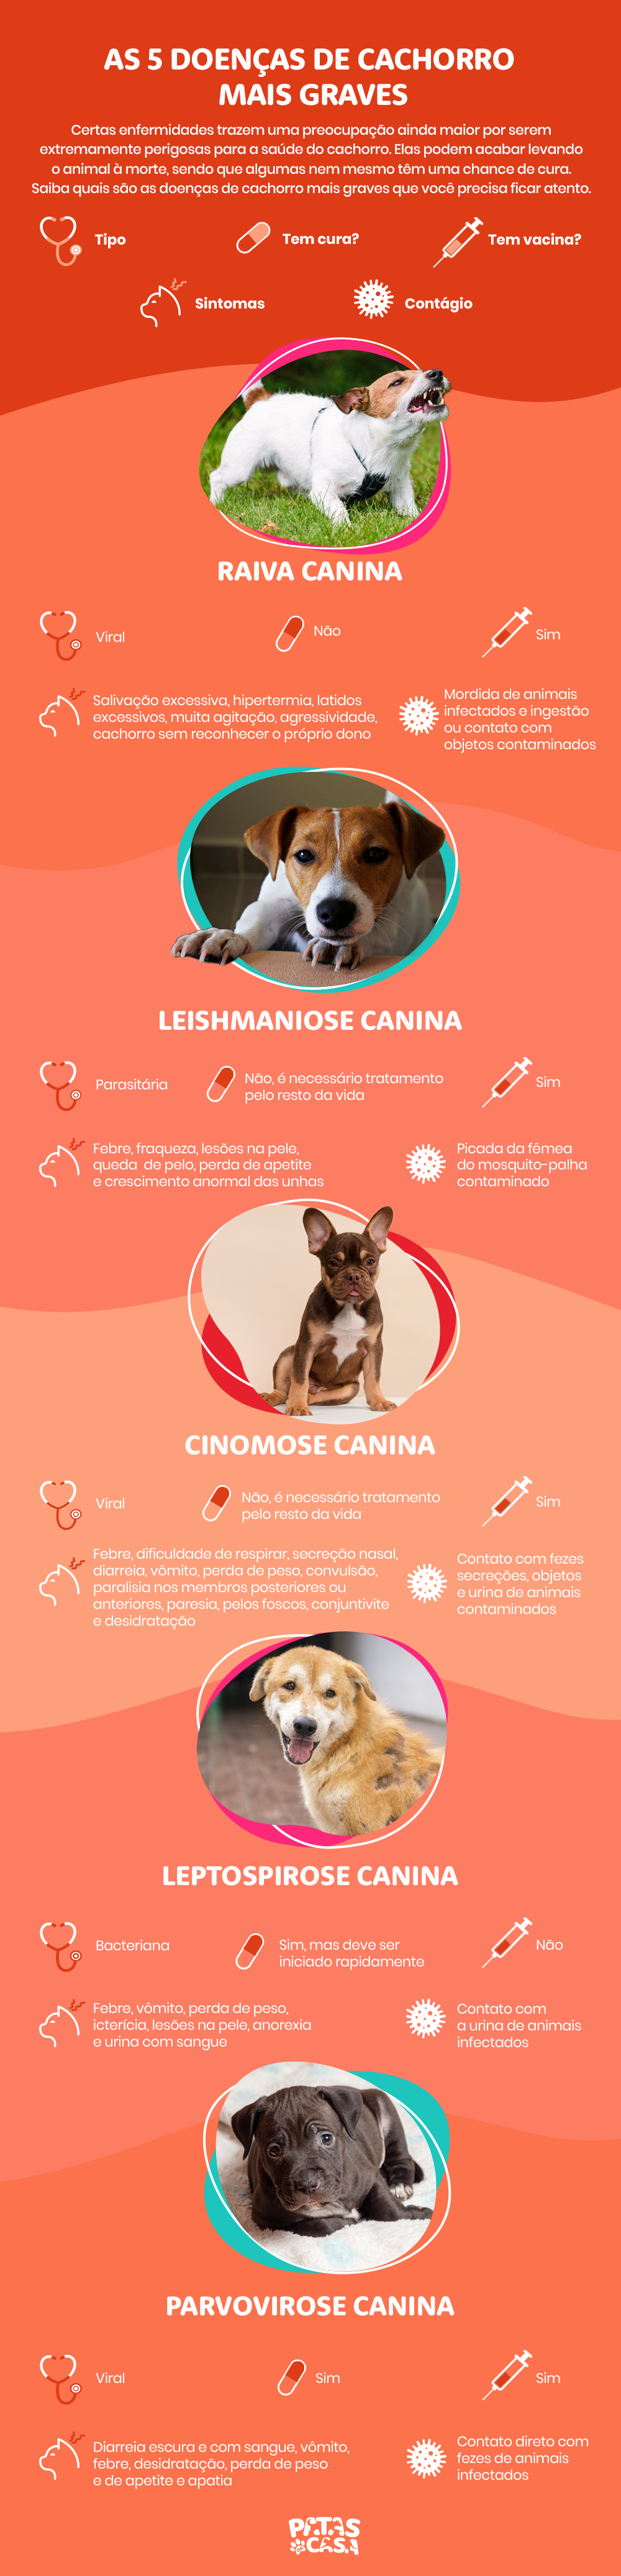 infográfico sobre doenças de cachorro